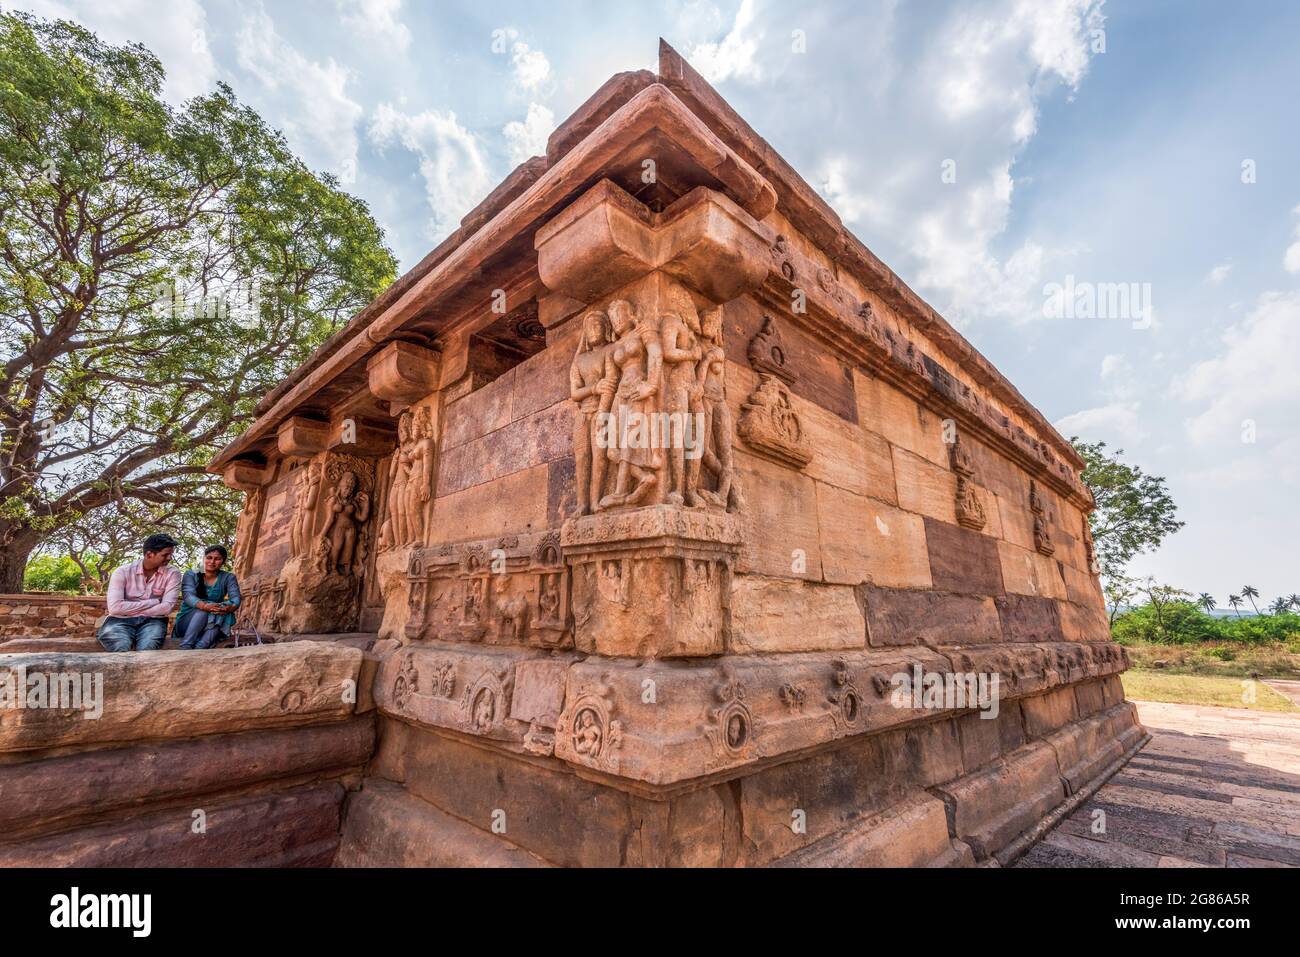 Aihole, Karnataka - 8 de enero de 2020 : Templo Huchappayya Matha en Aihole. Uno de los destinos turísticos más famosos de karnataka, India. Foto de stock